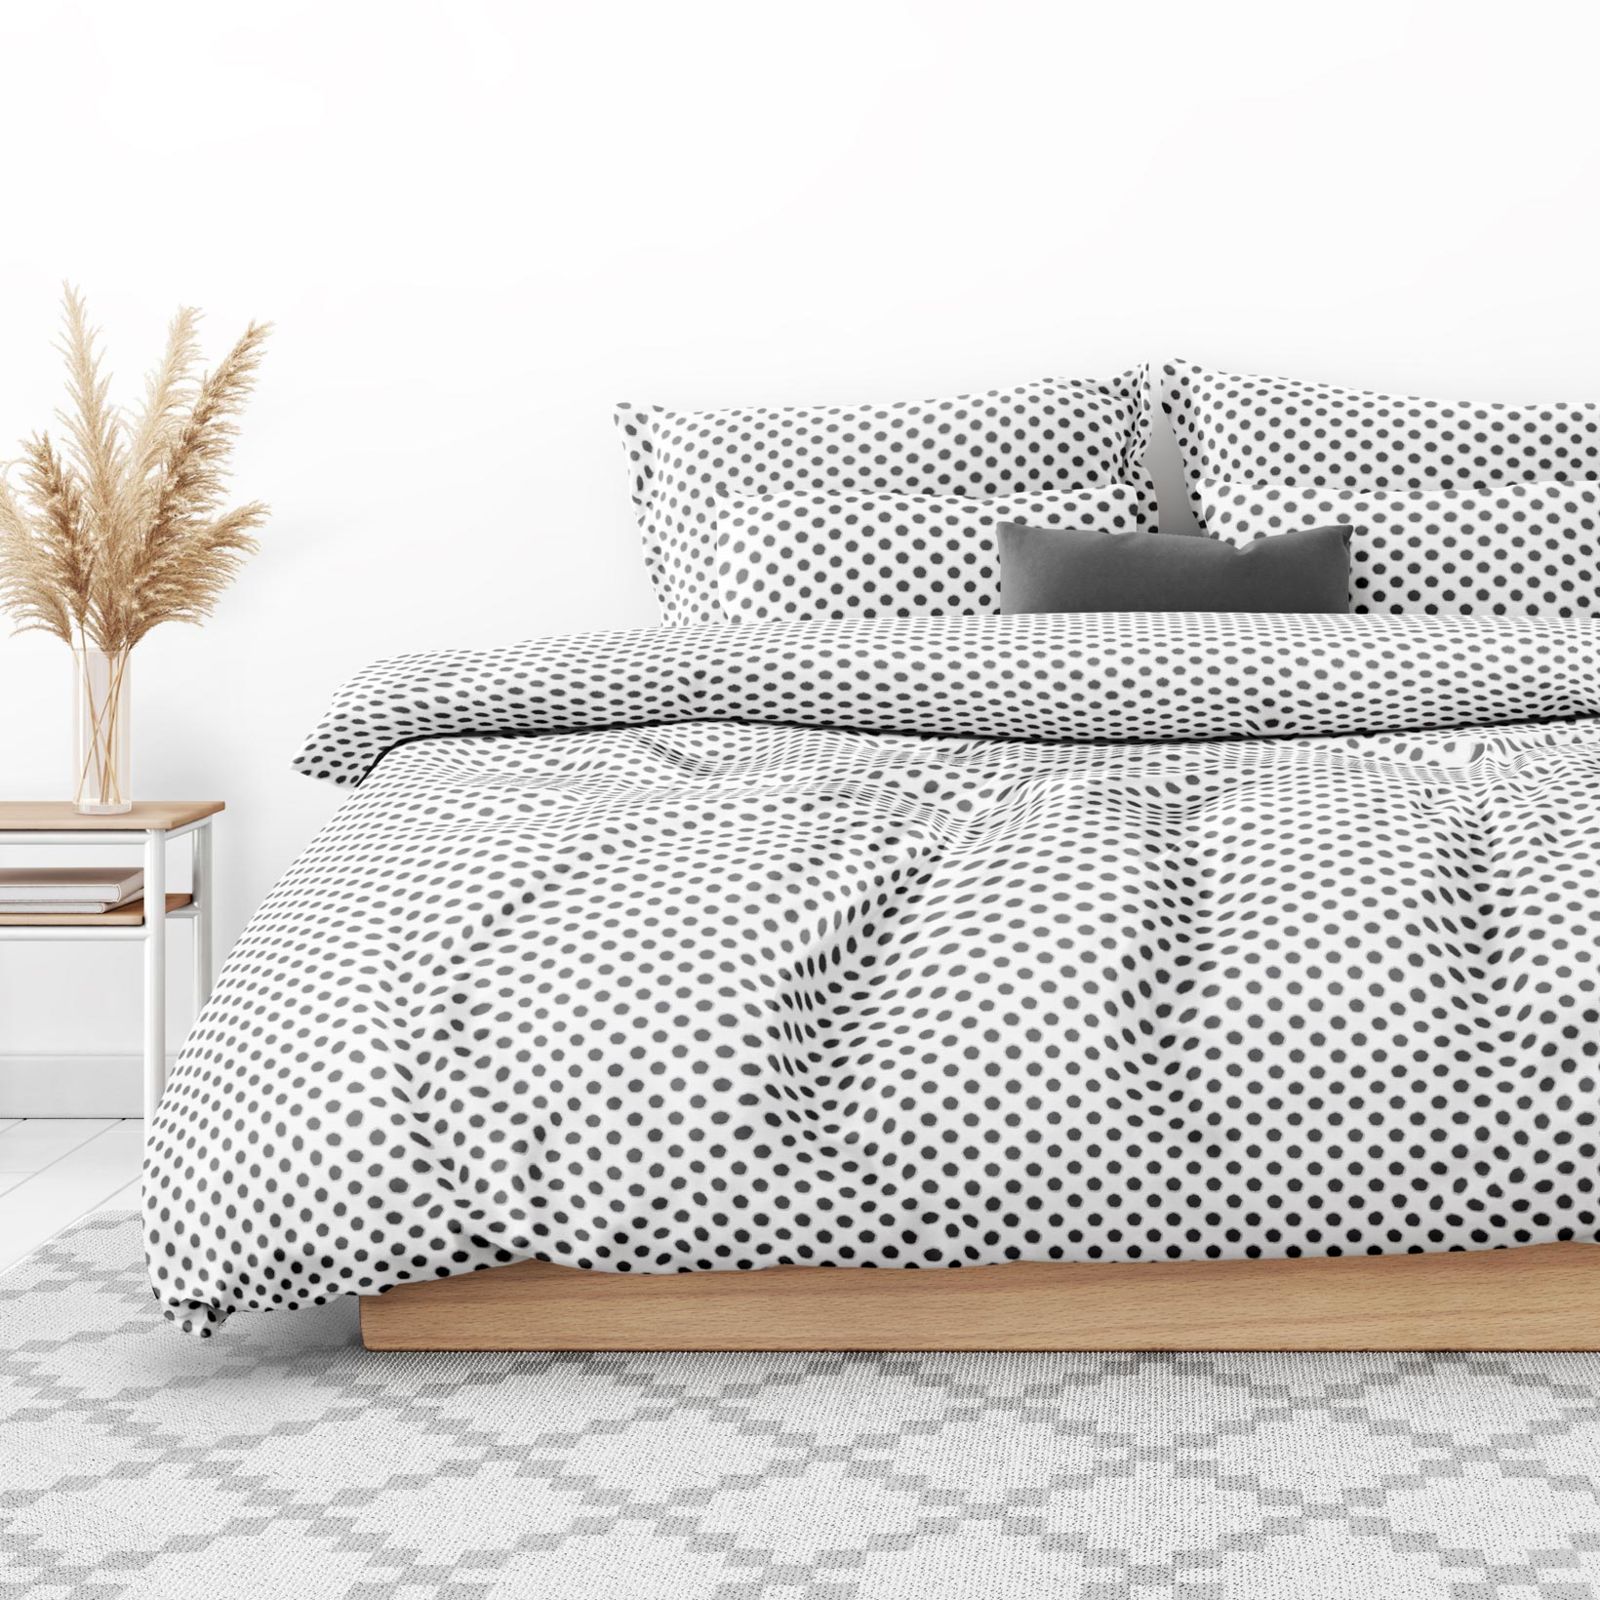 Bavlnené posteľné obliečky - sivé dizajnové bodky